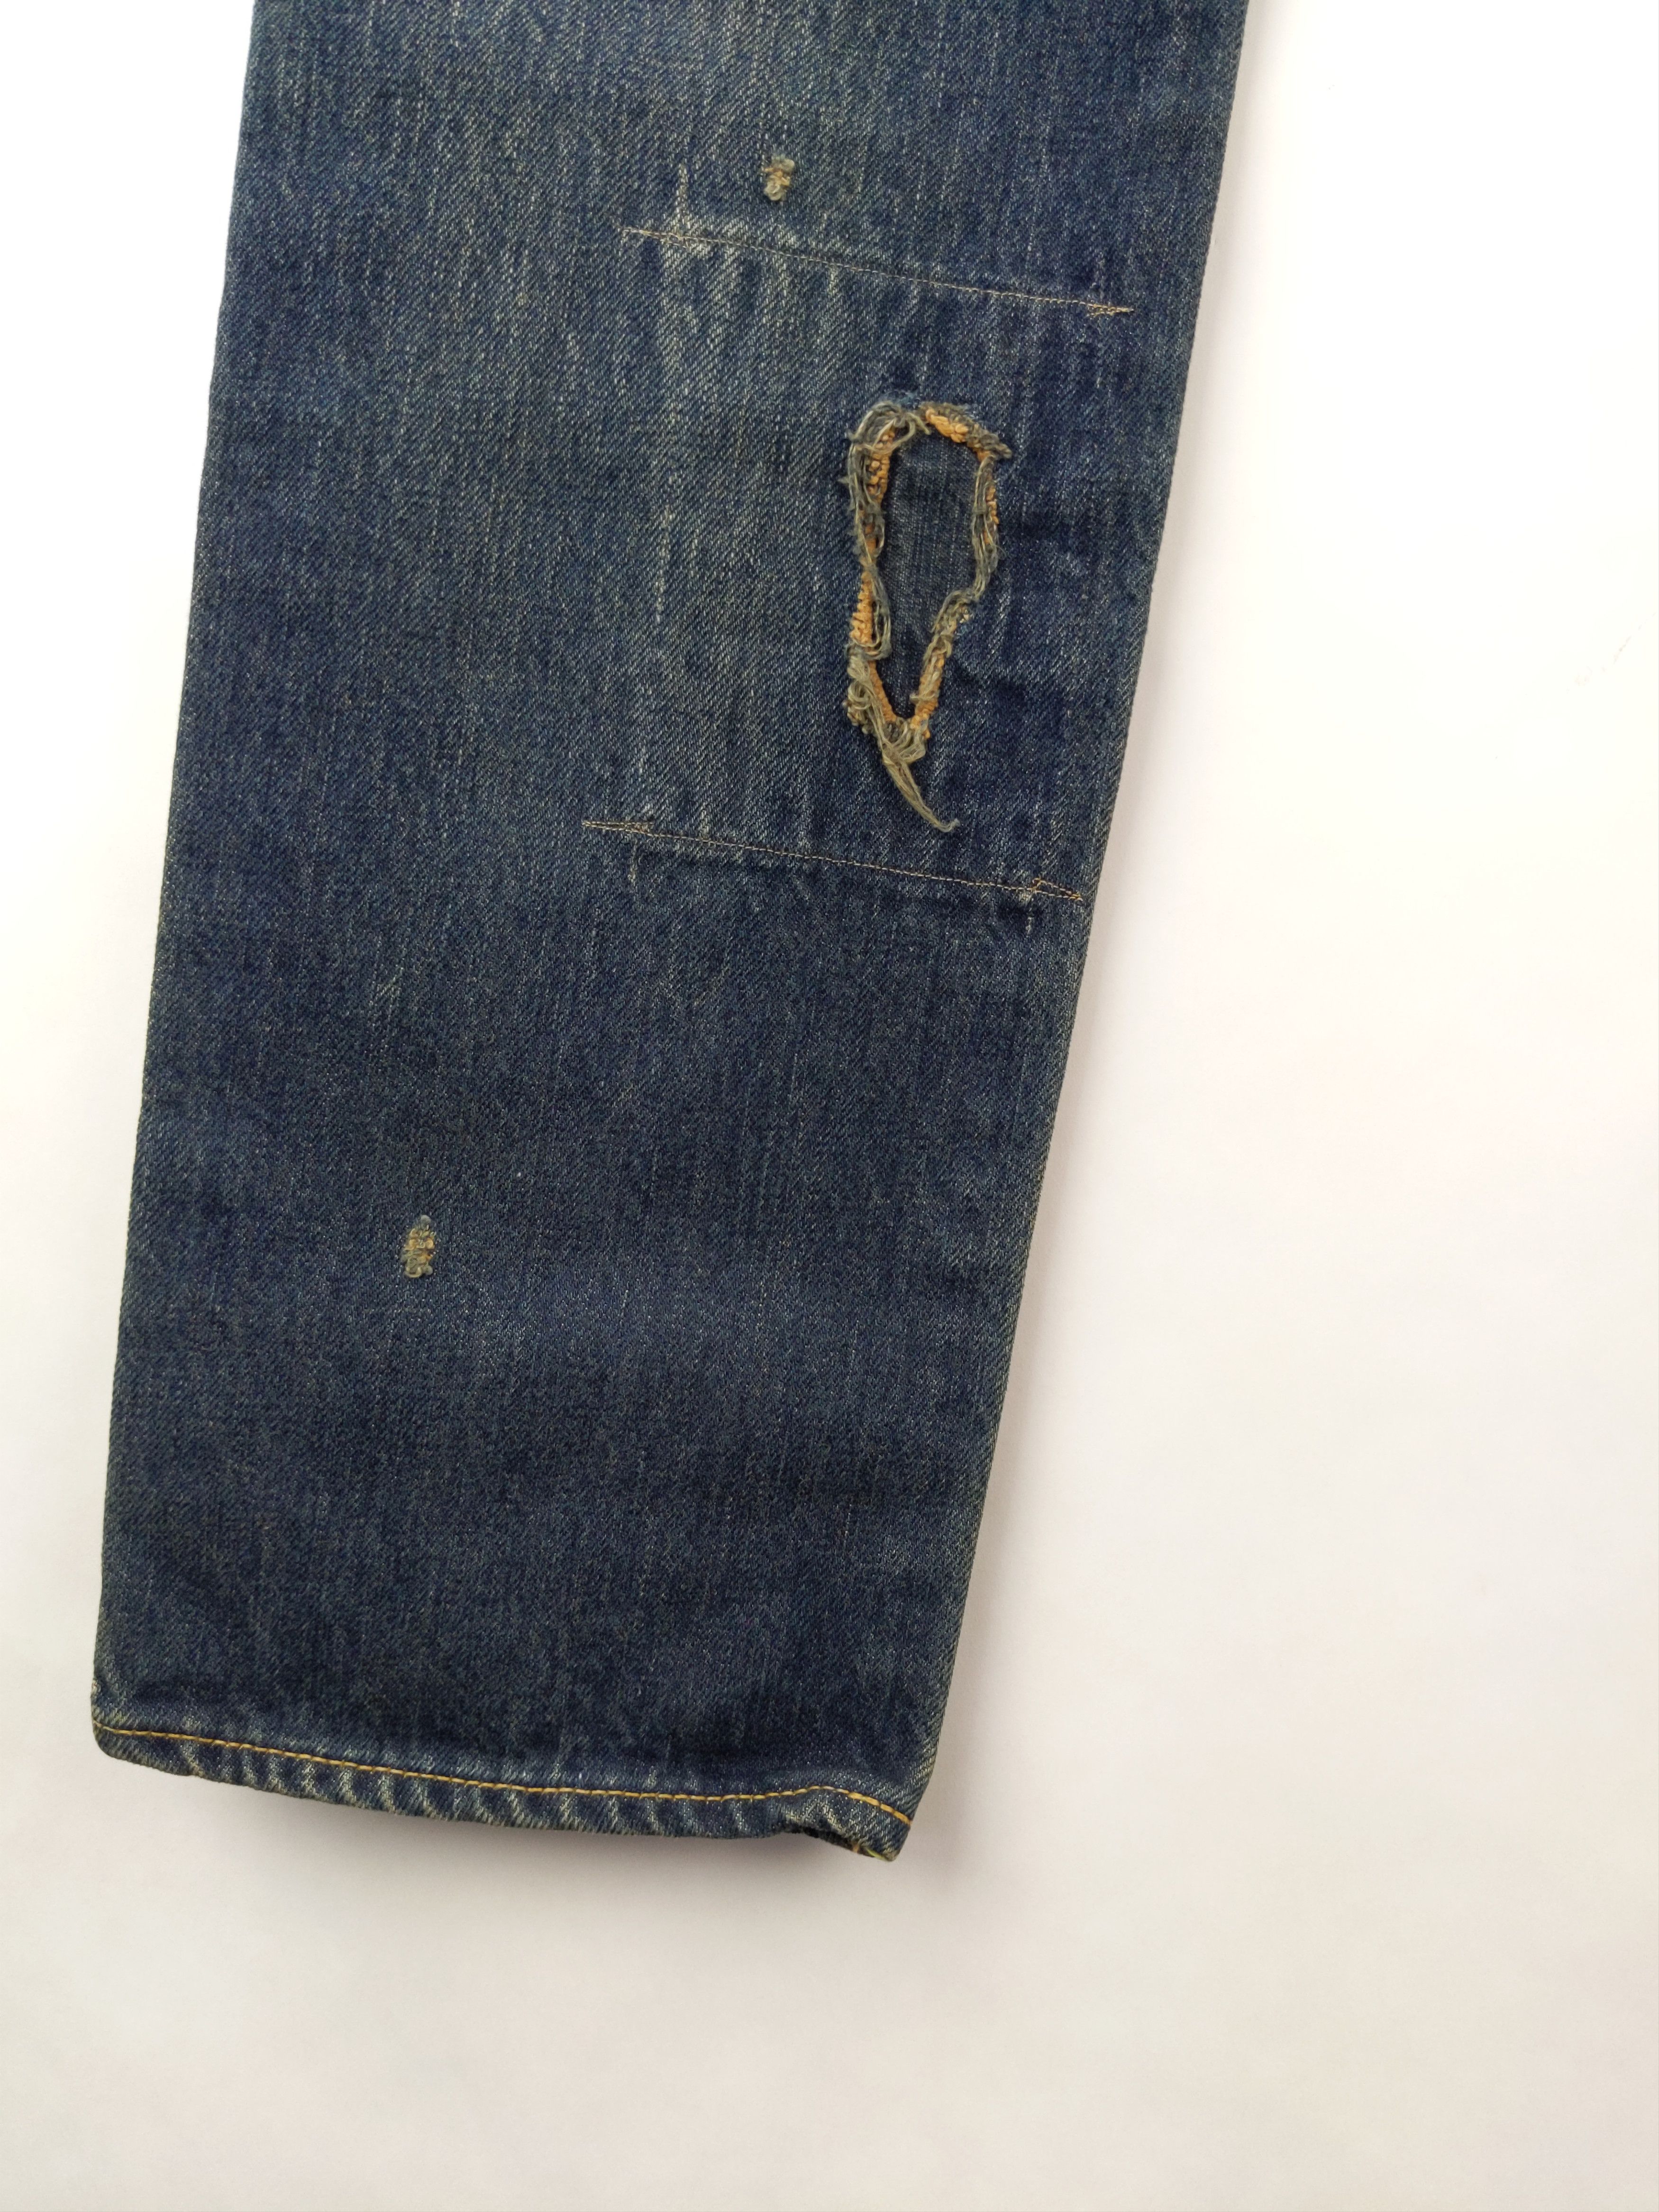 Kapital KAPITAL KOUNTRY Sashiko Boro Bush Pants Jeans Denim US S Size US 29 - 8 Thumbnail